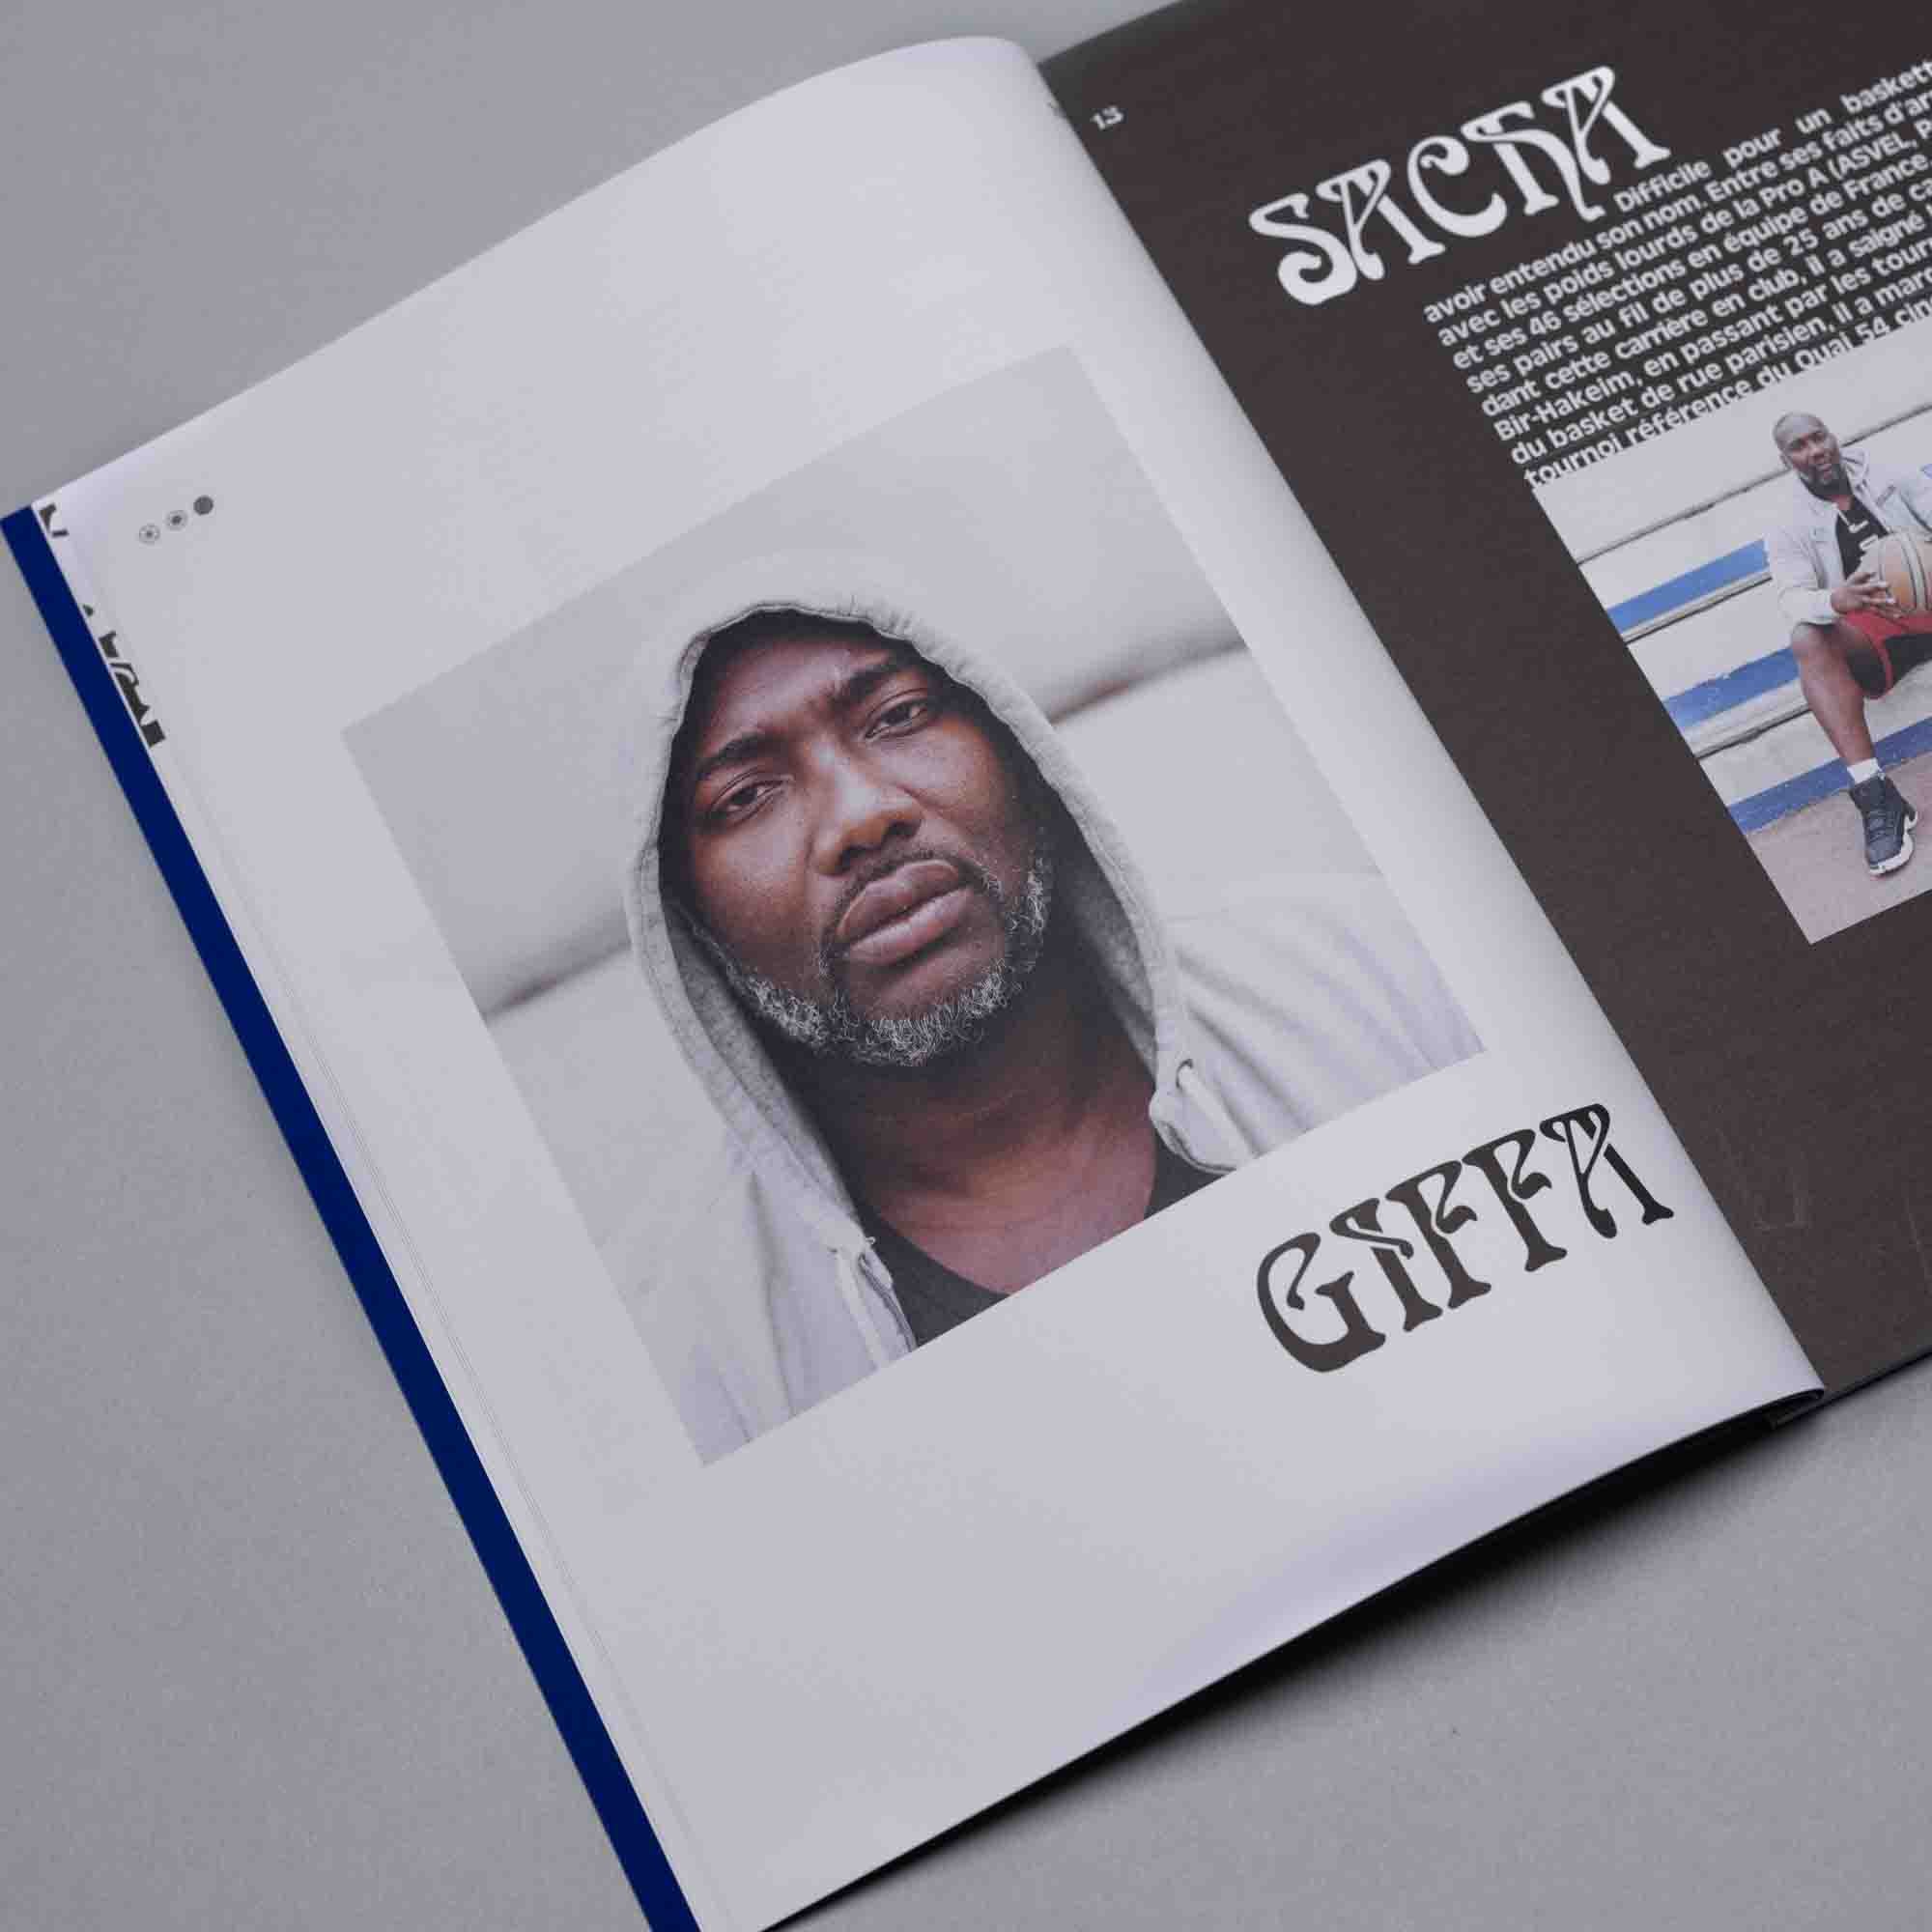 Issue 03 - Paris